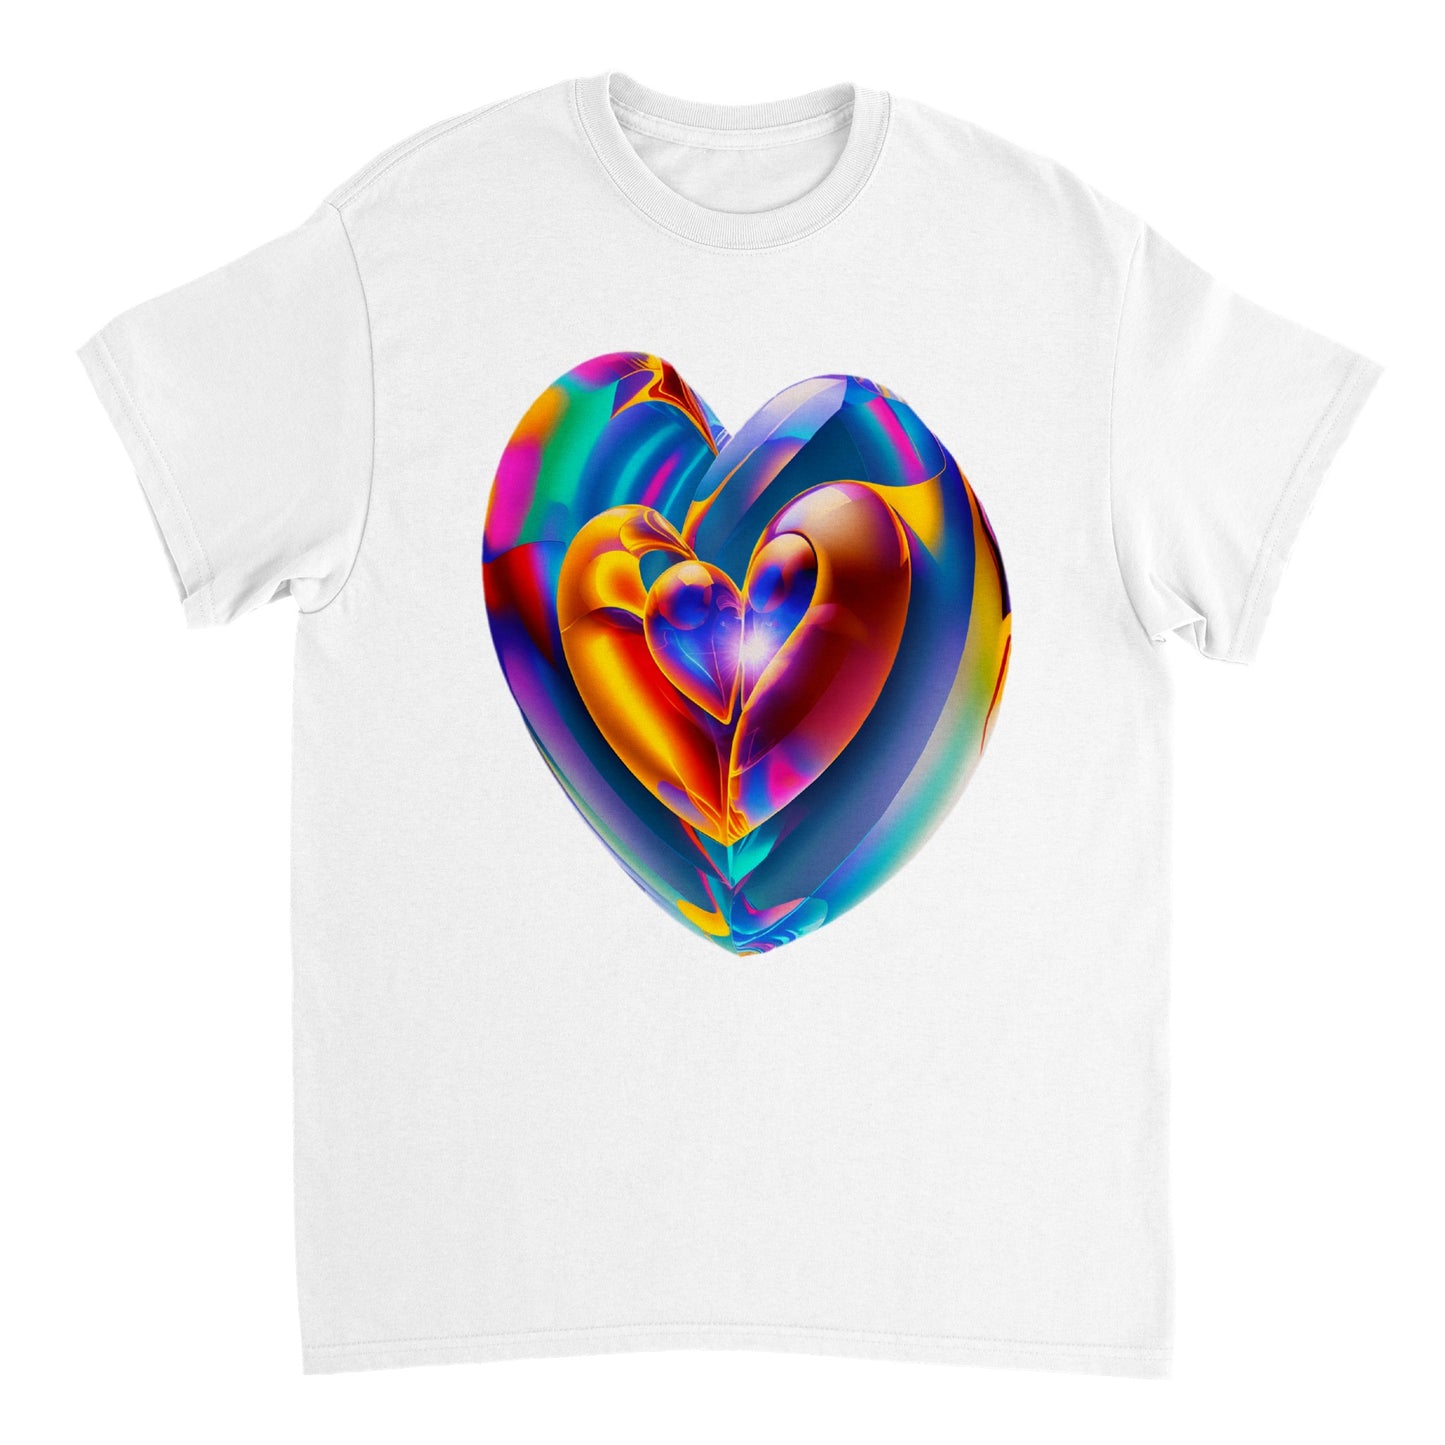 Love Heart - Heavyweight Unisex Crewneck T-shirt 39